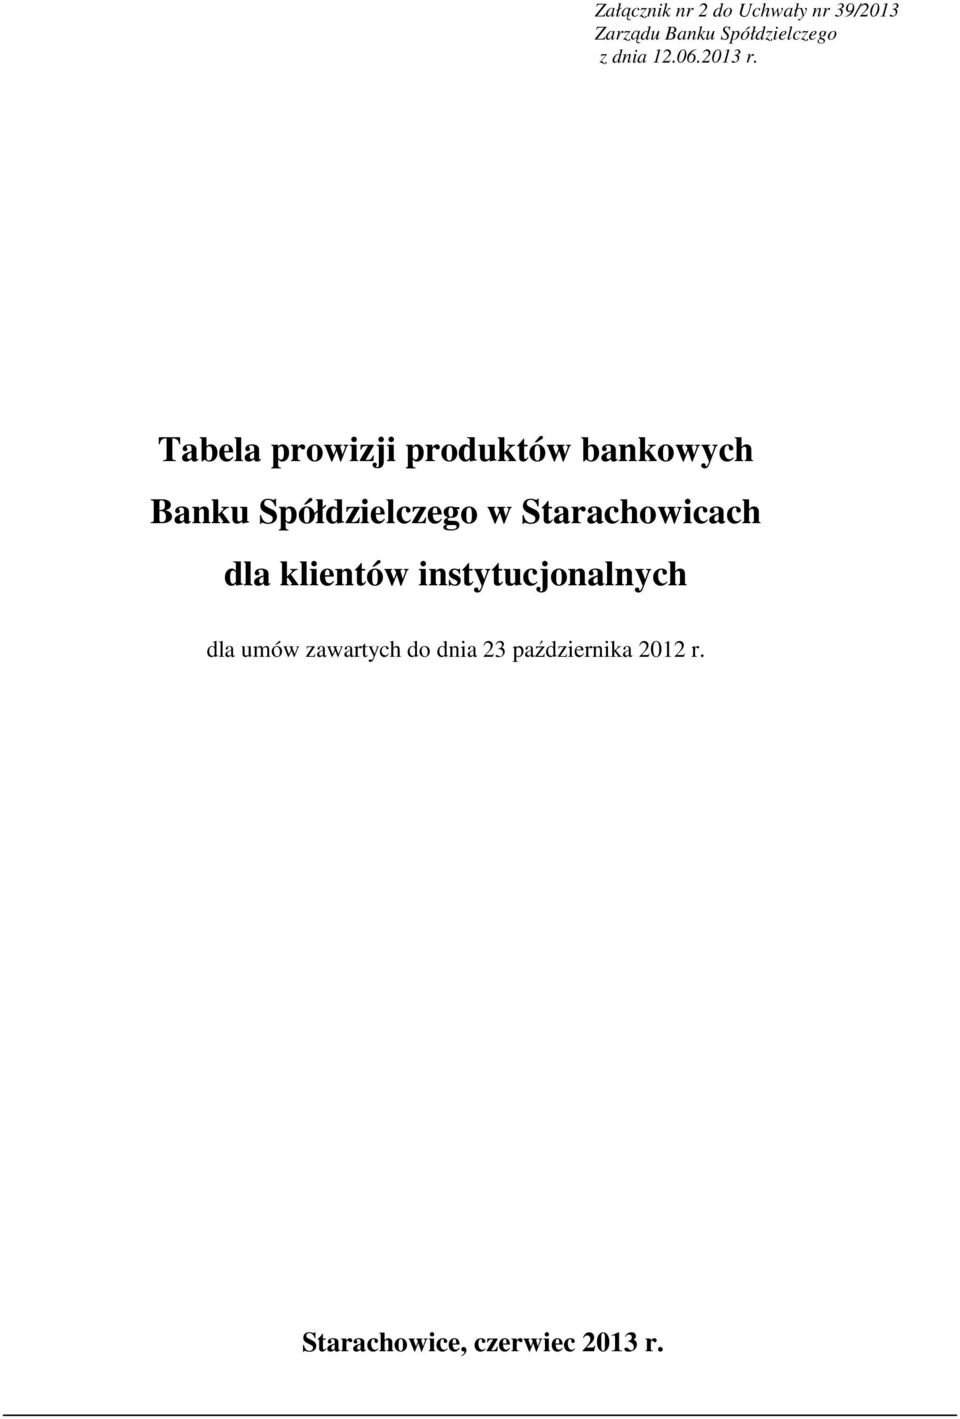 Tabela prowizji produktów bankowych Banku Spółdzielczego w